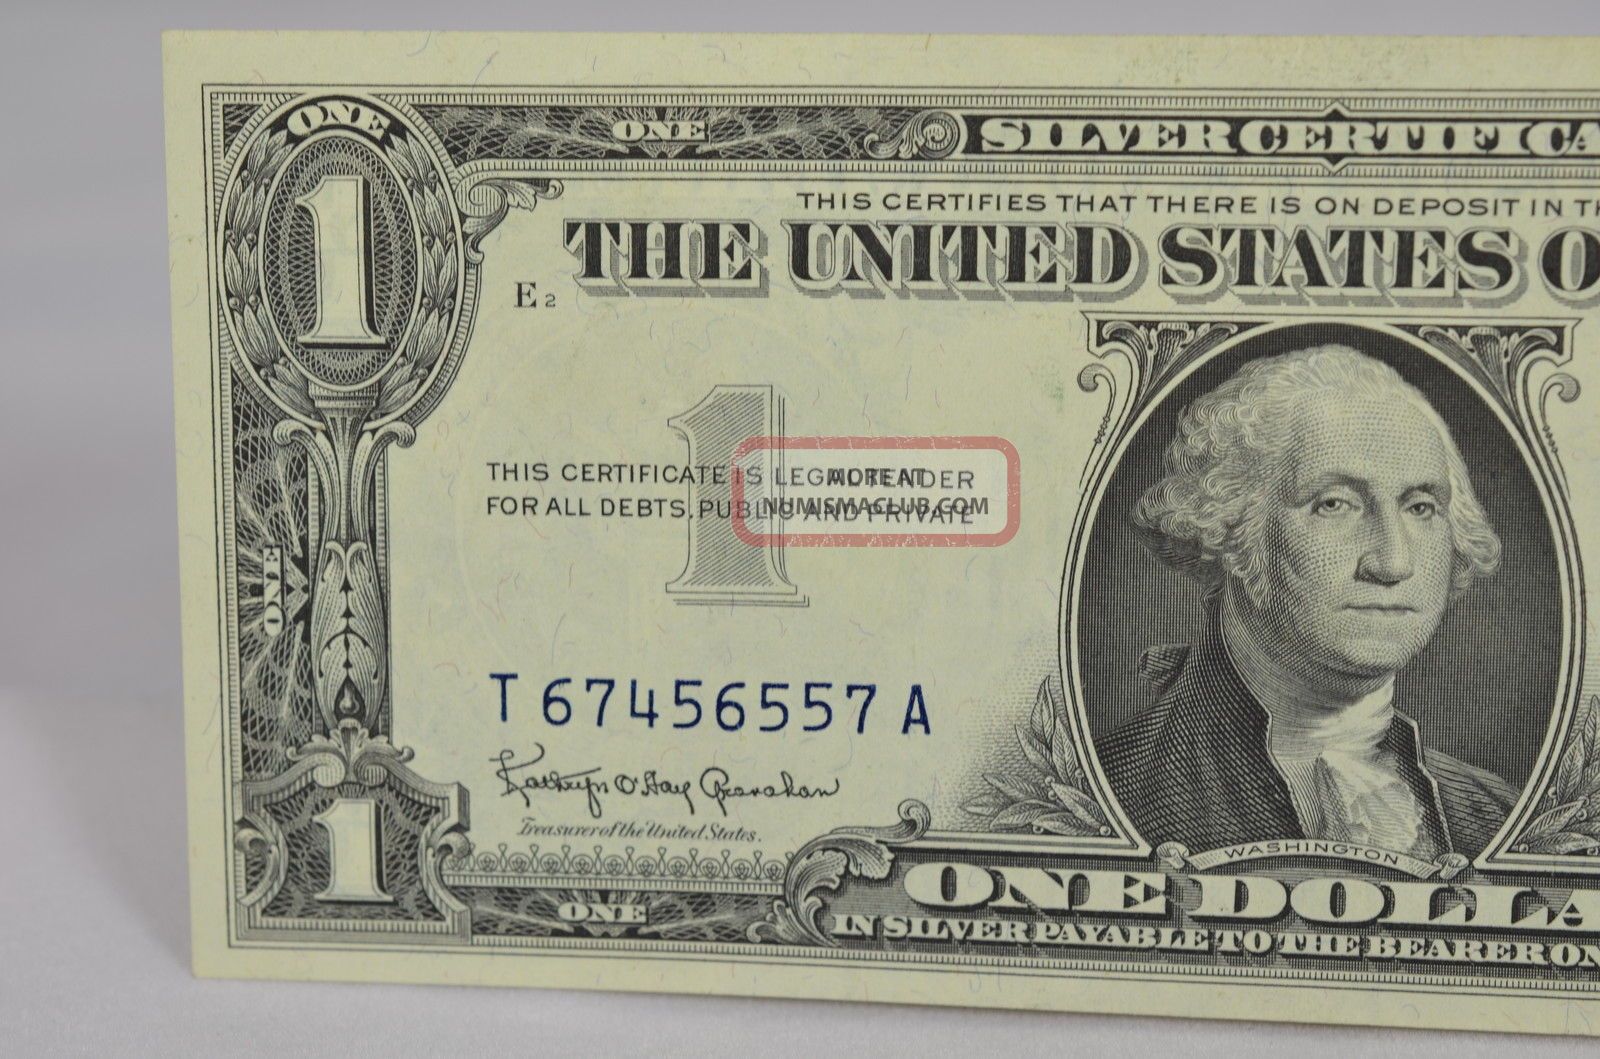 $1 Silver Certificate Series 1957 B T67456557a